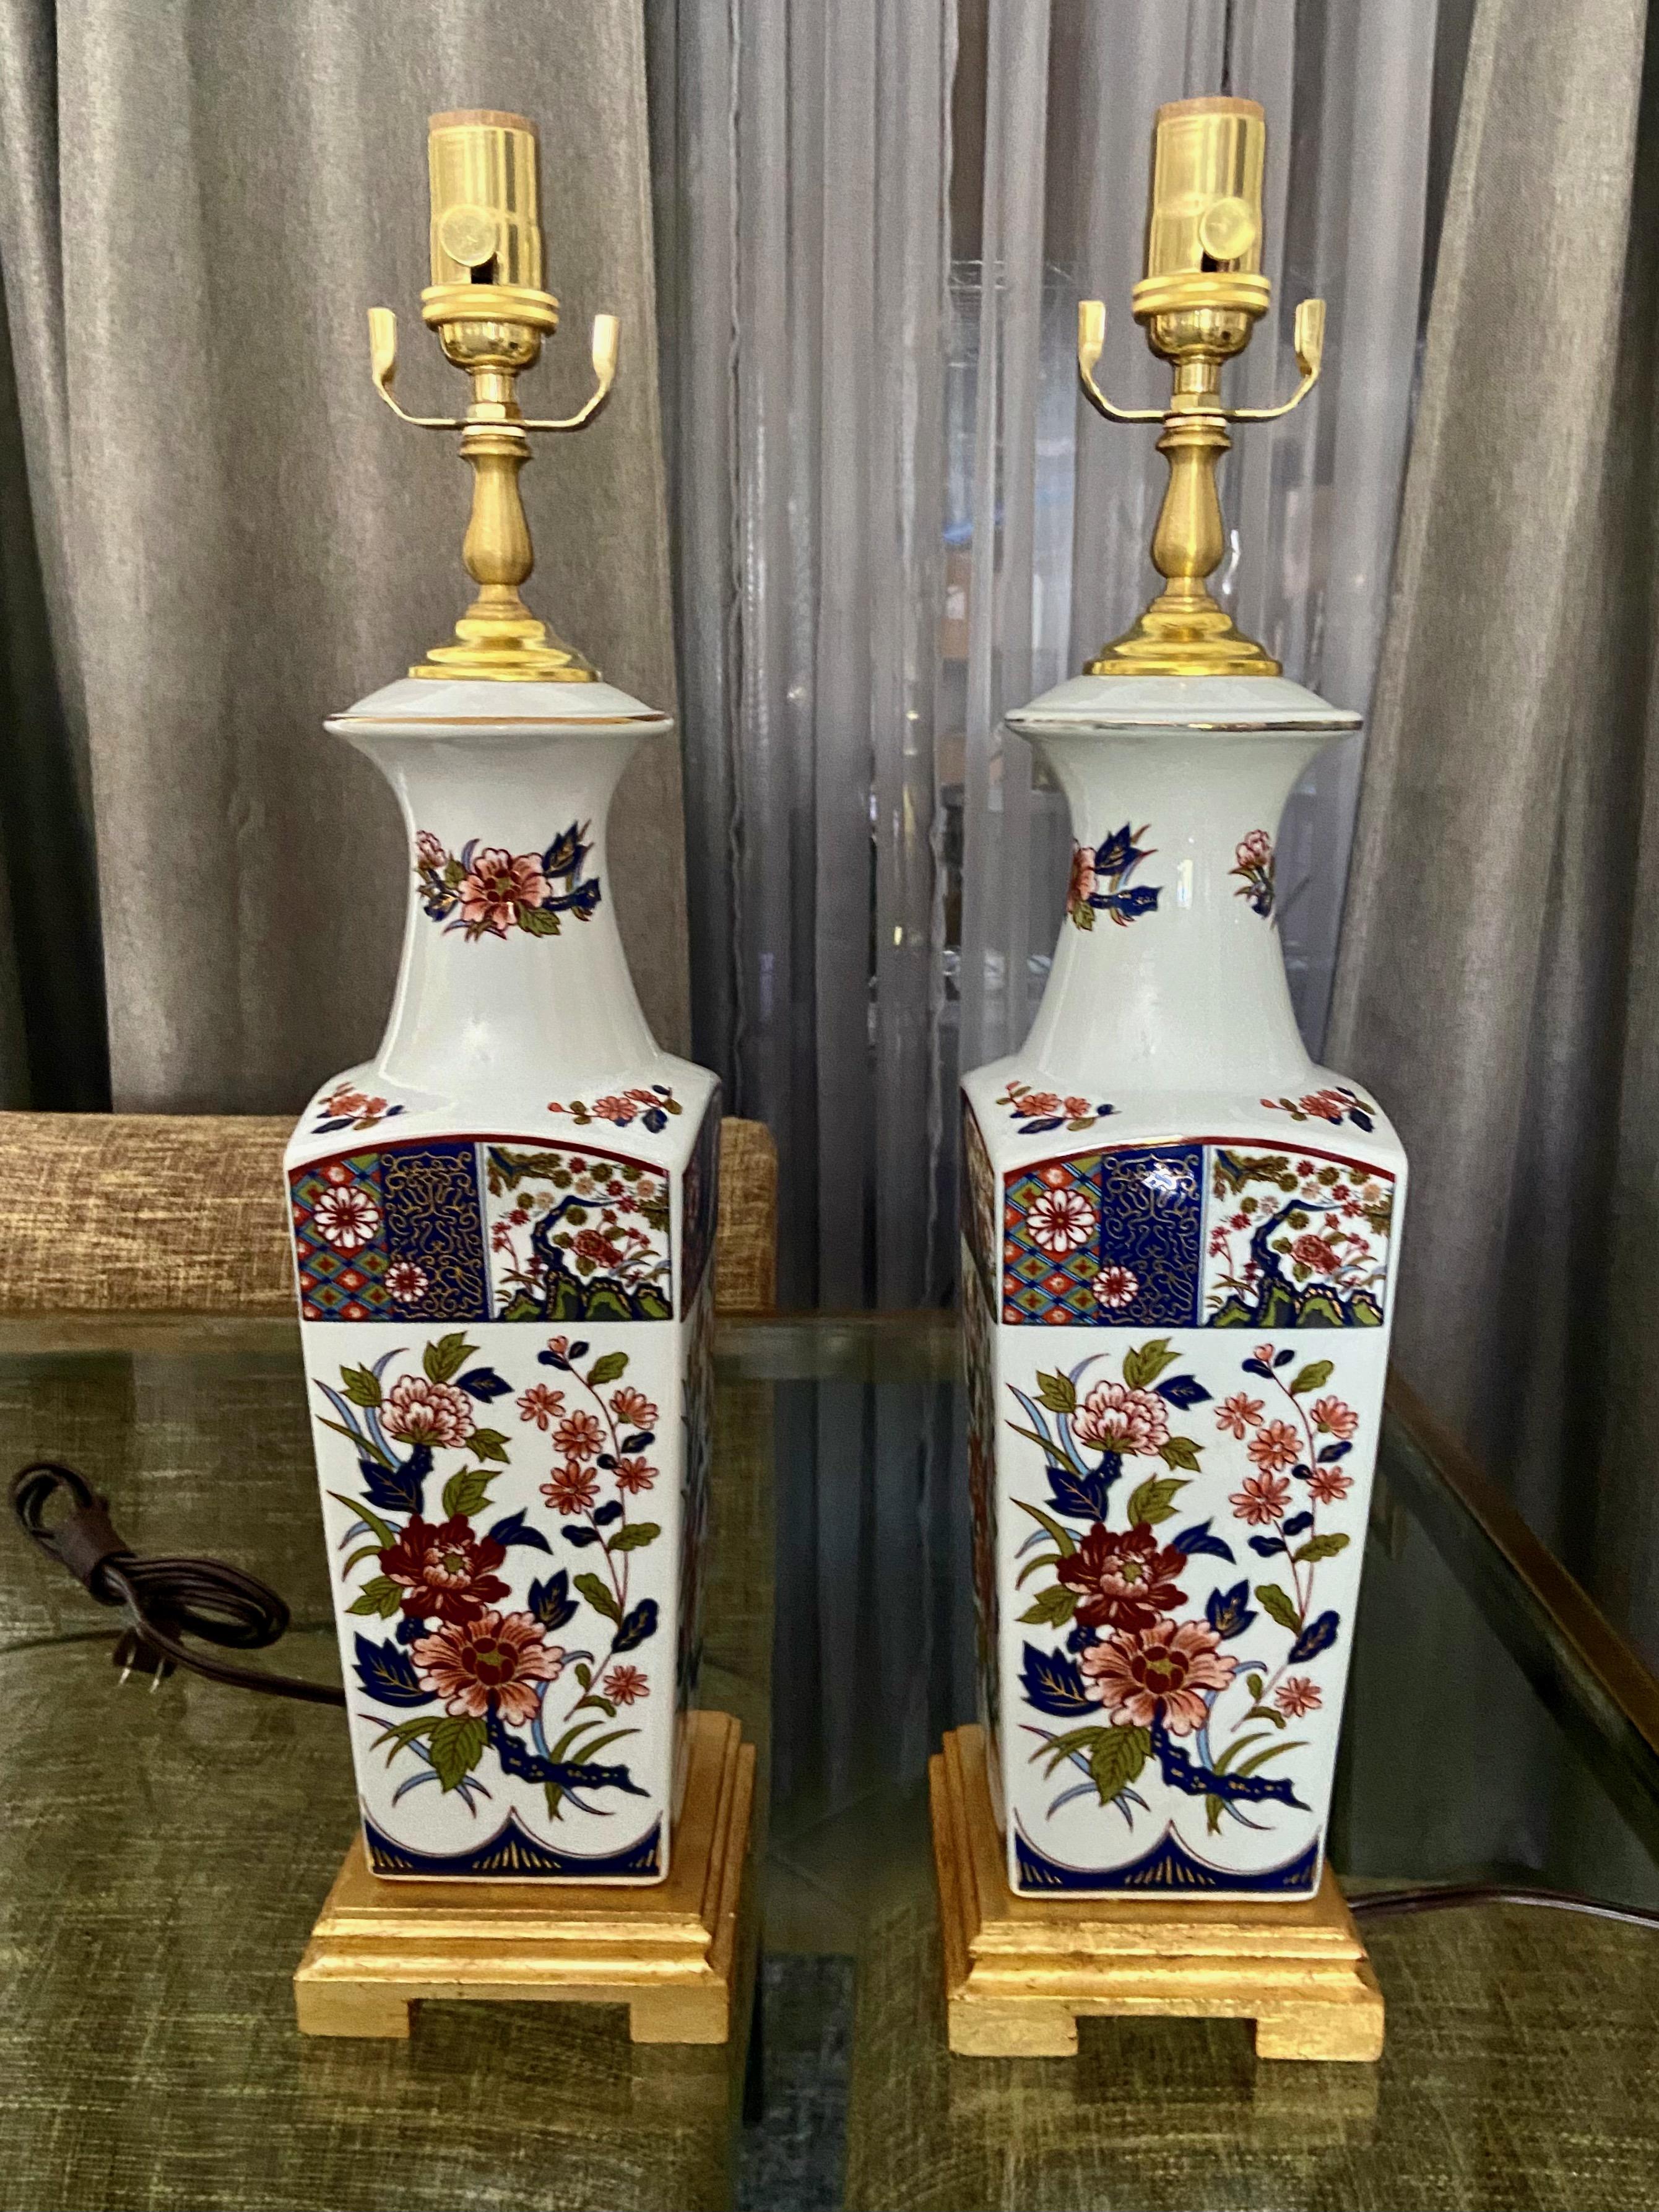 Zwei quadratische Vasen aus japanischem Imari-Porzellan auf Sockeln aus vergoldetem Holz. Die Farben sind ein sattes Rot und Blau, das Design ist ein klassisches Blumen- und Blattmotiv.  Neu verkabelt mit neuen 3-Wege-Steckdosen aus Messing,